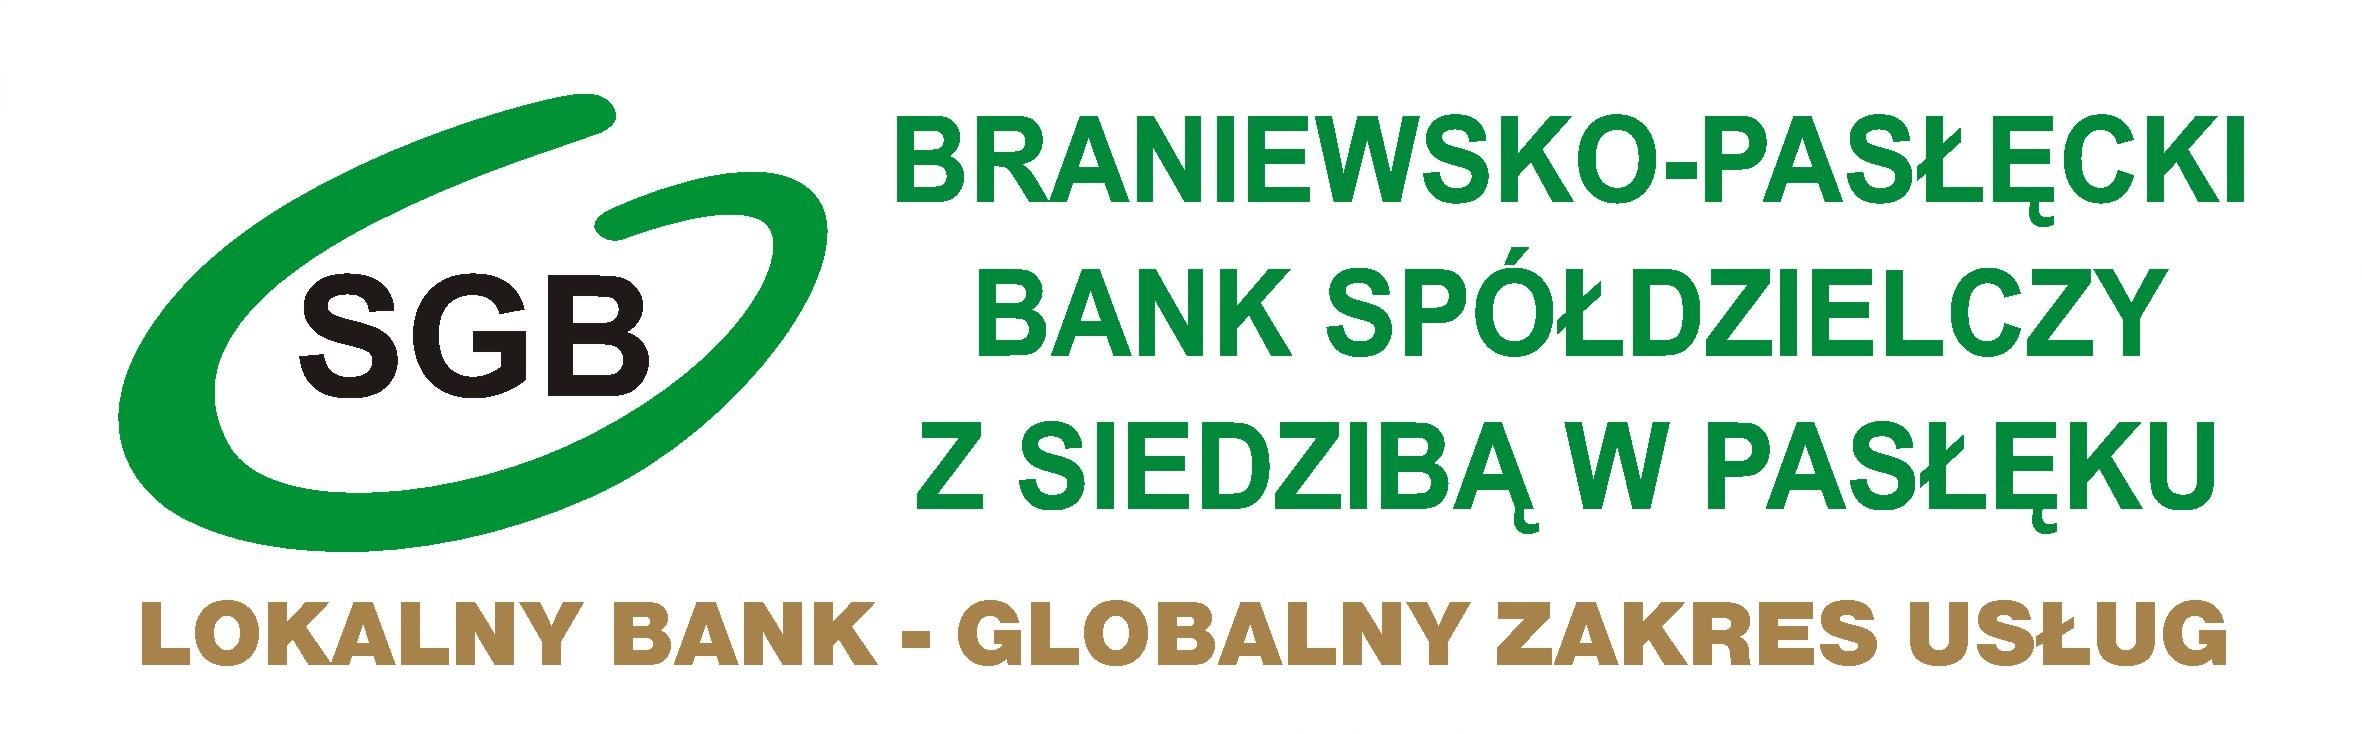 SGB ID - Braniewsko-Pasłęcki Bank Spółdzielczy z siedzibą w Pasłęku